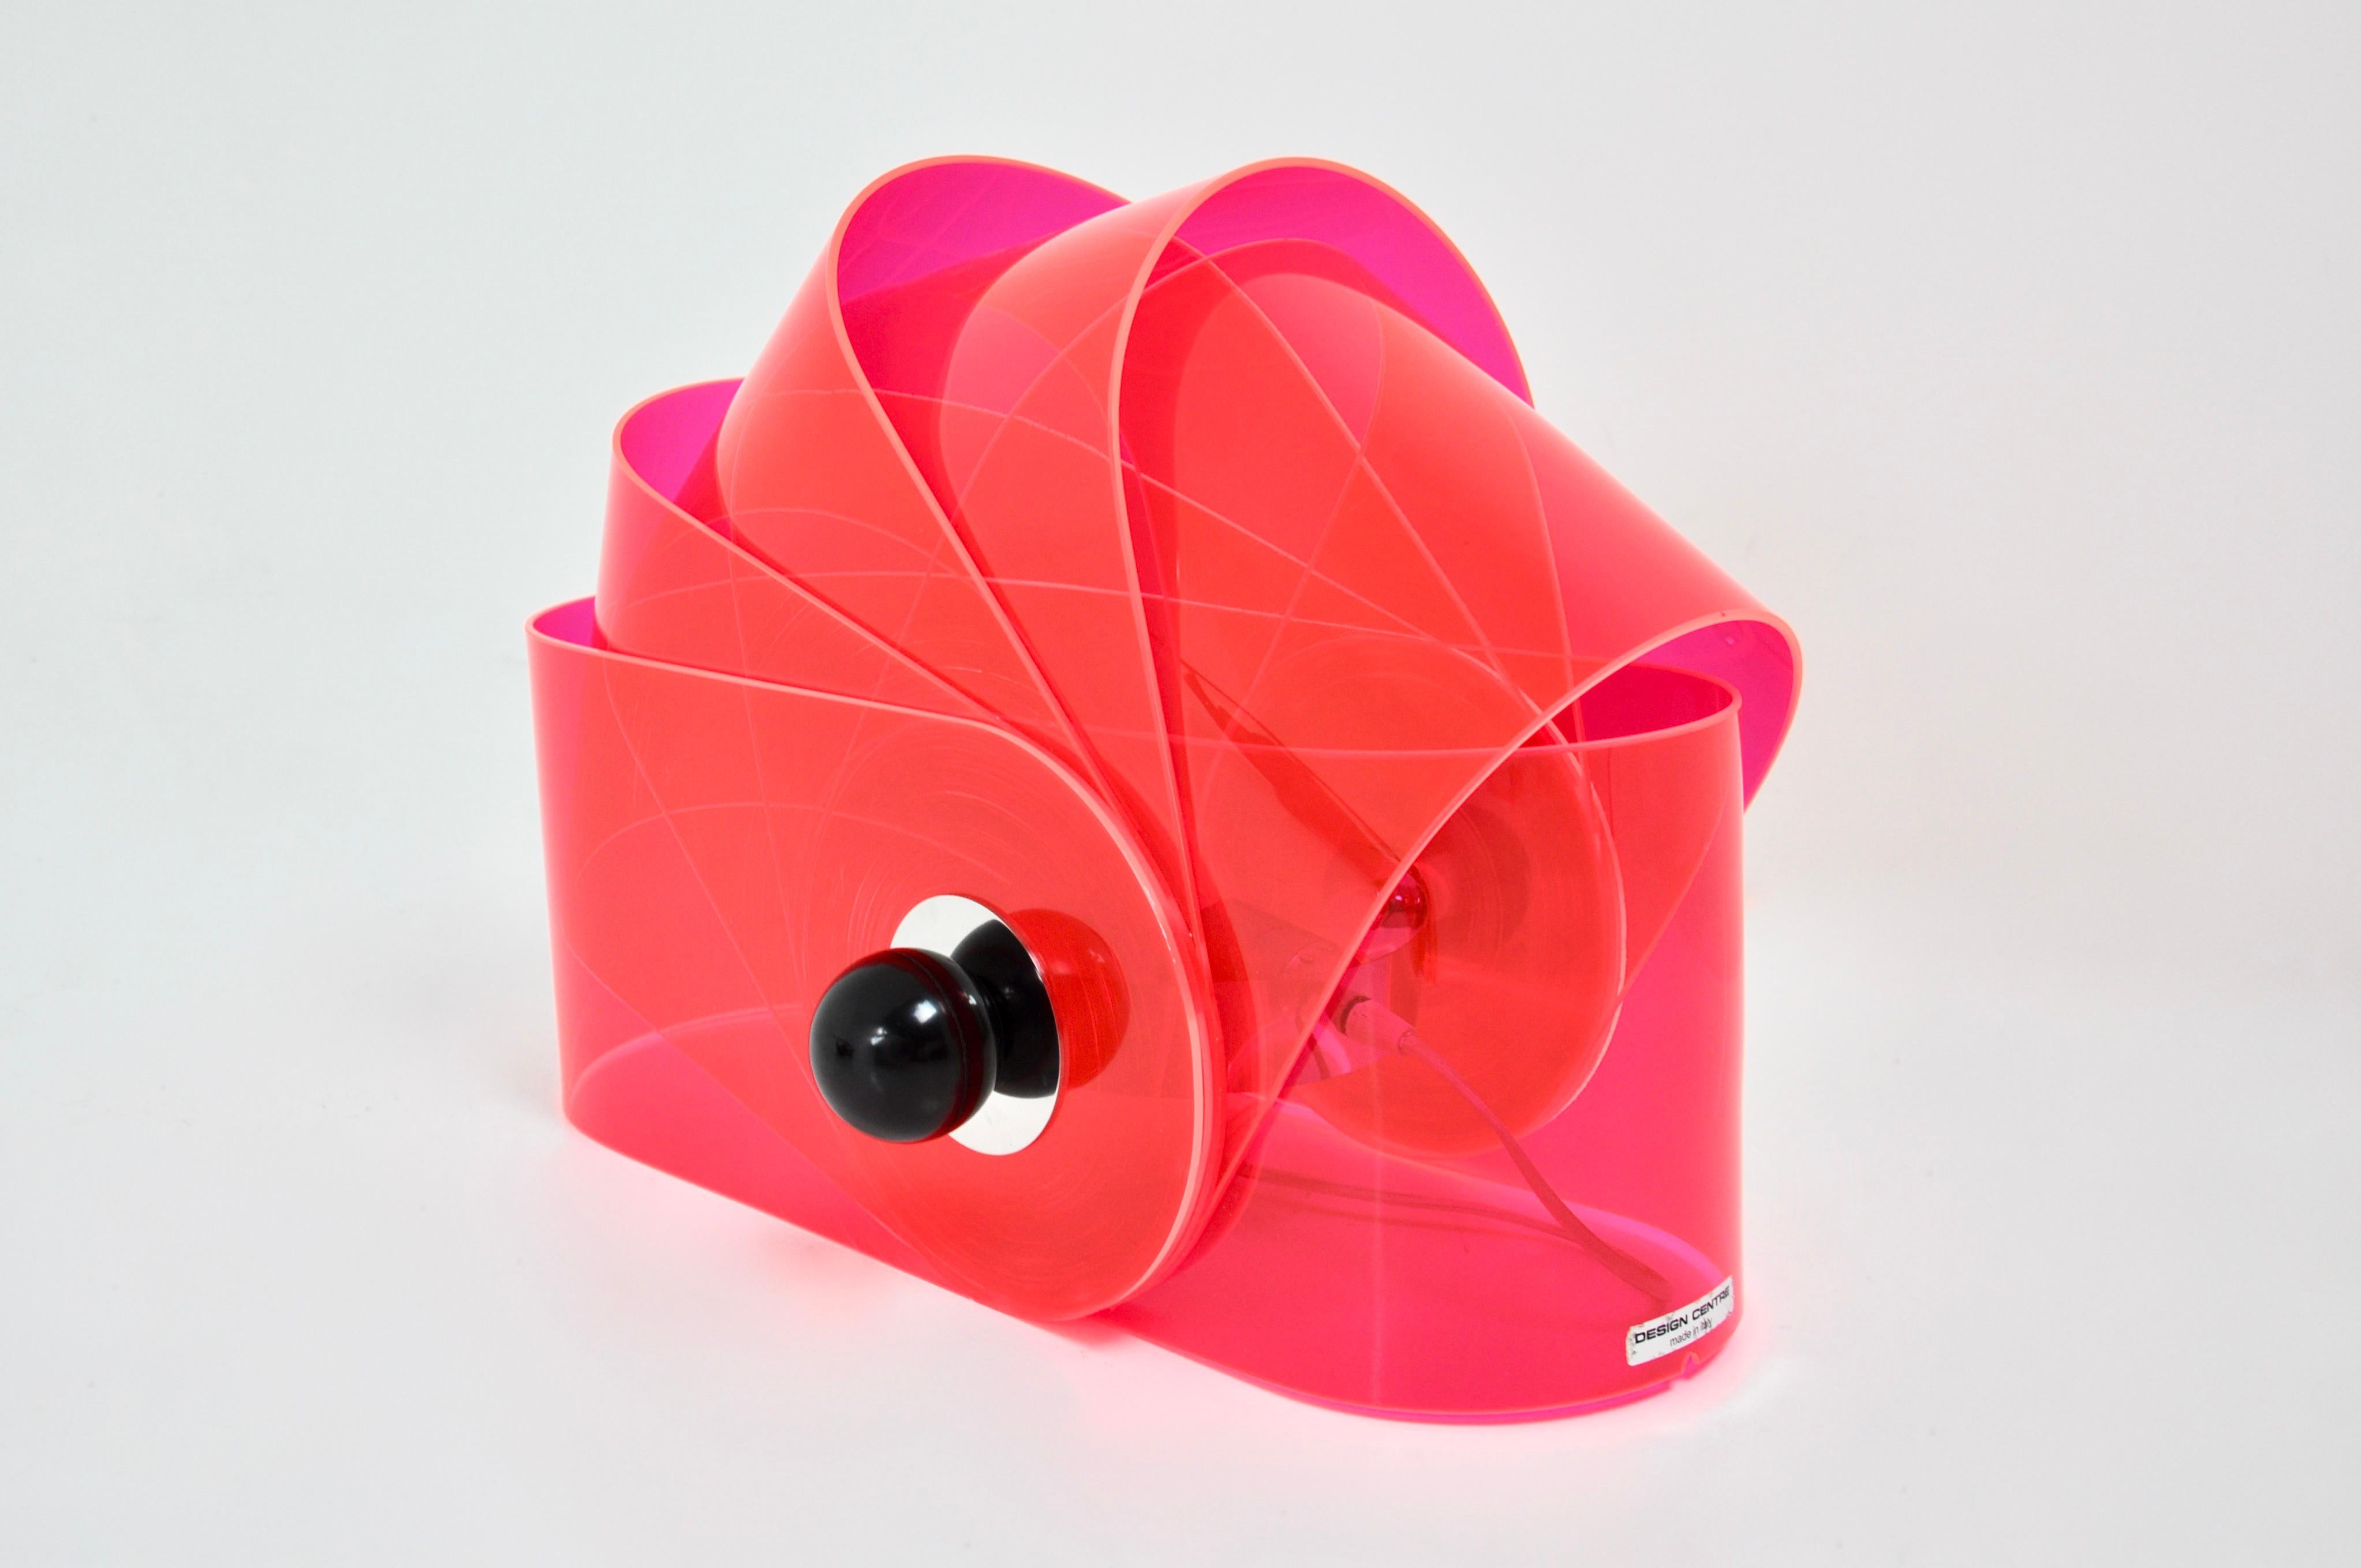 Lampe italienne en plastique rose par Superstudio. Modèle Gherpe. Vous pouvez déplacer chaque partie pour obtenir la forme que vous préférez. Usure due au temps et à l'âge de la lampe.